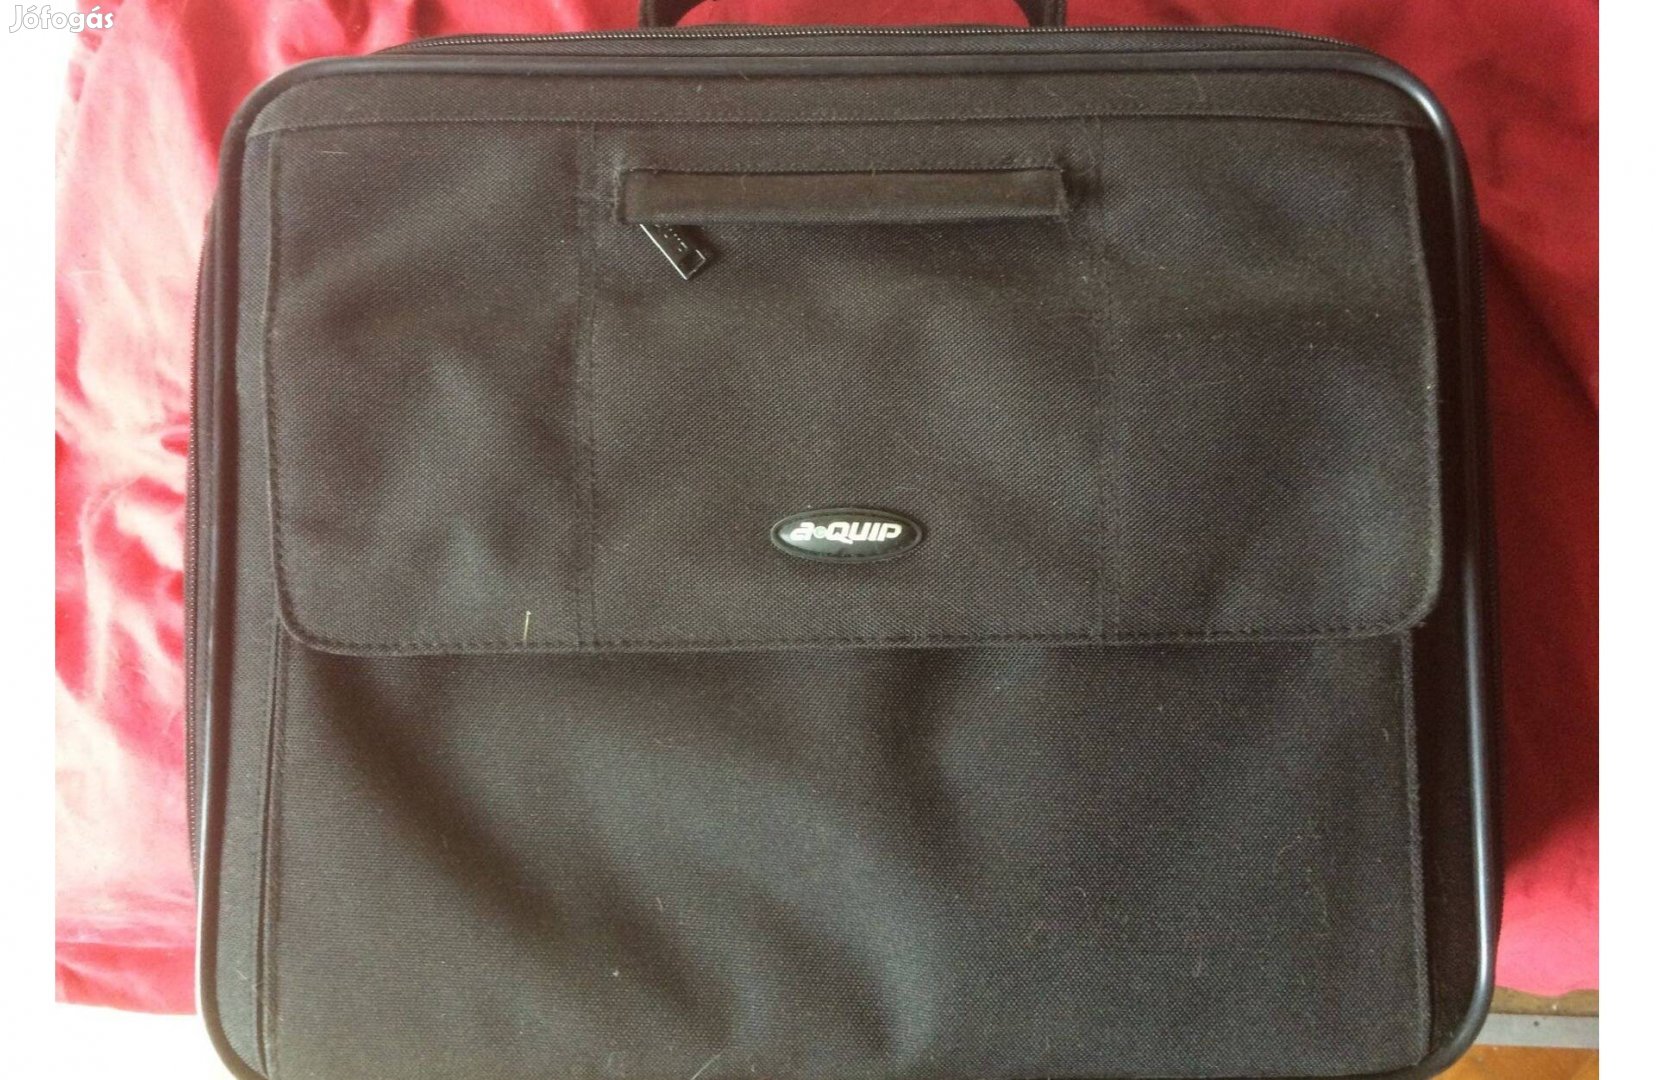 Laptop táska 16" a quip új! eladó!